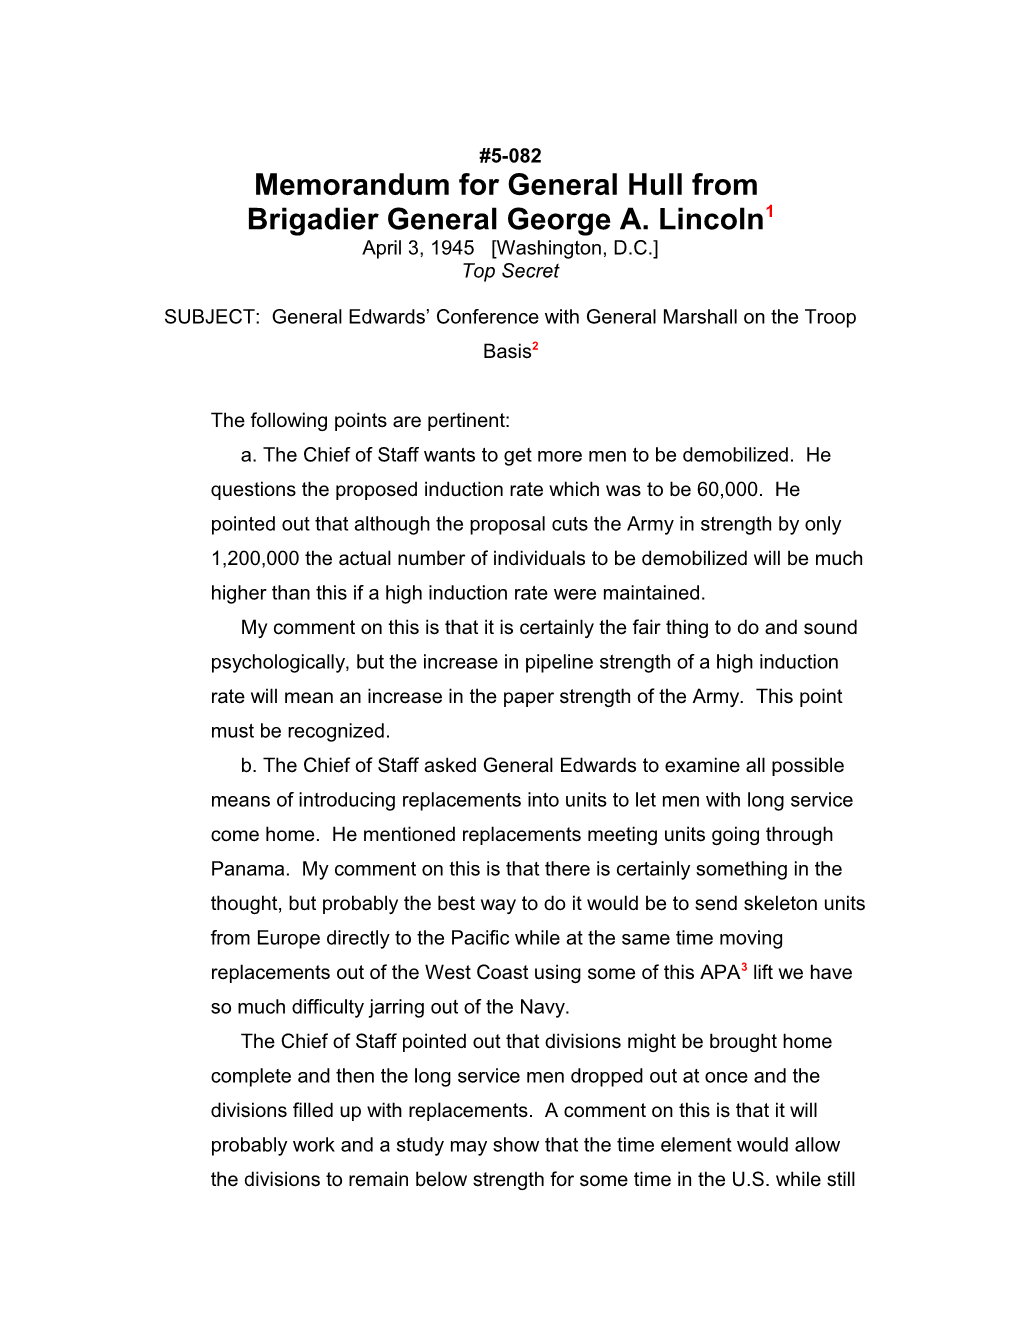 Memorandum for General Hull From